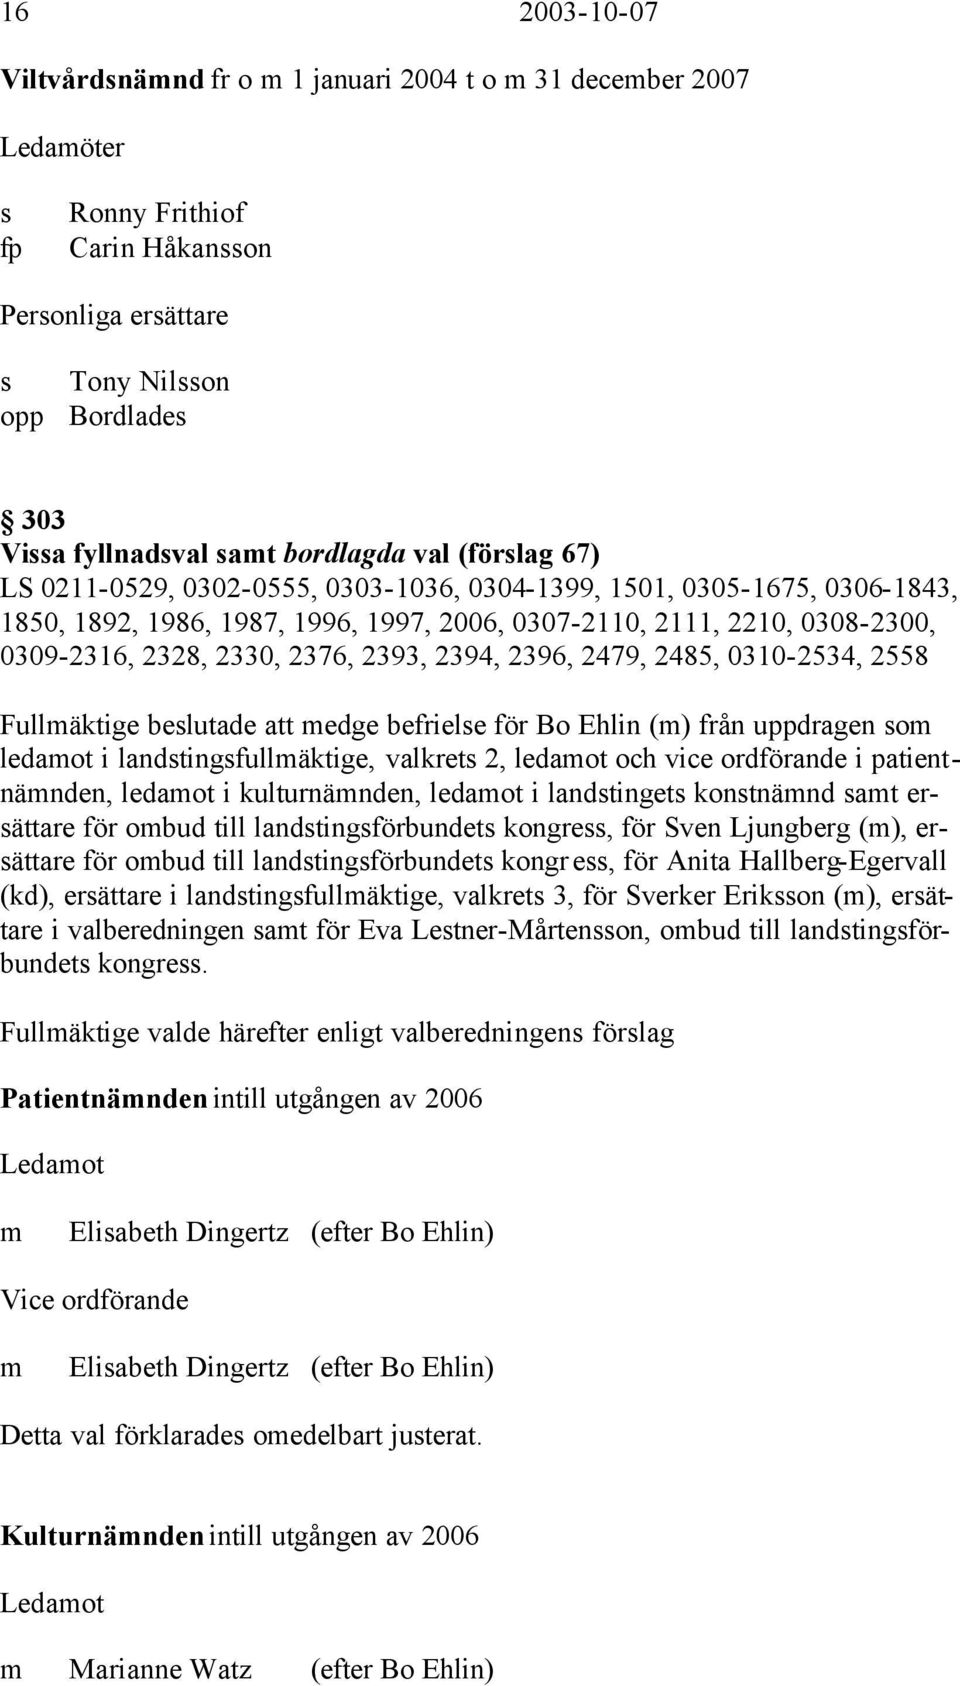 2330, 2376, 2393, 2394, 2396, 2479, 2485, 0310-2534, 2558 Fullmäktige beslutade att medge befrielse för Bo Ehlin (m) från uppdragen som ledamot i landstingsfullmäktige, valkrets 2, ledamot och vice